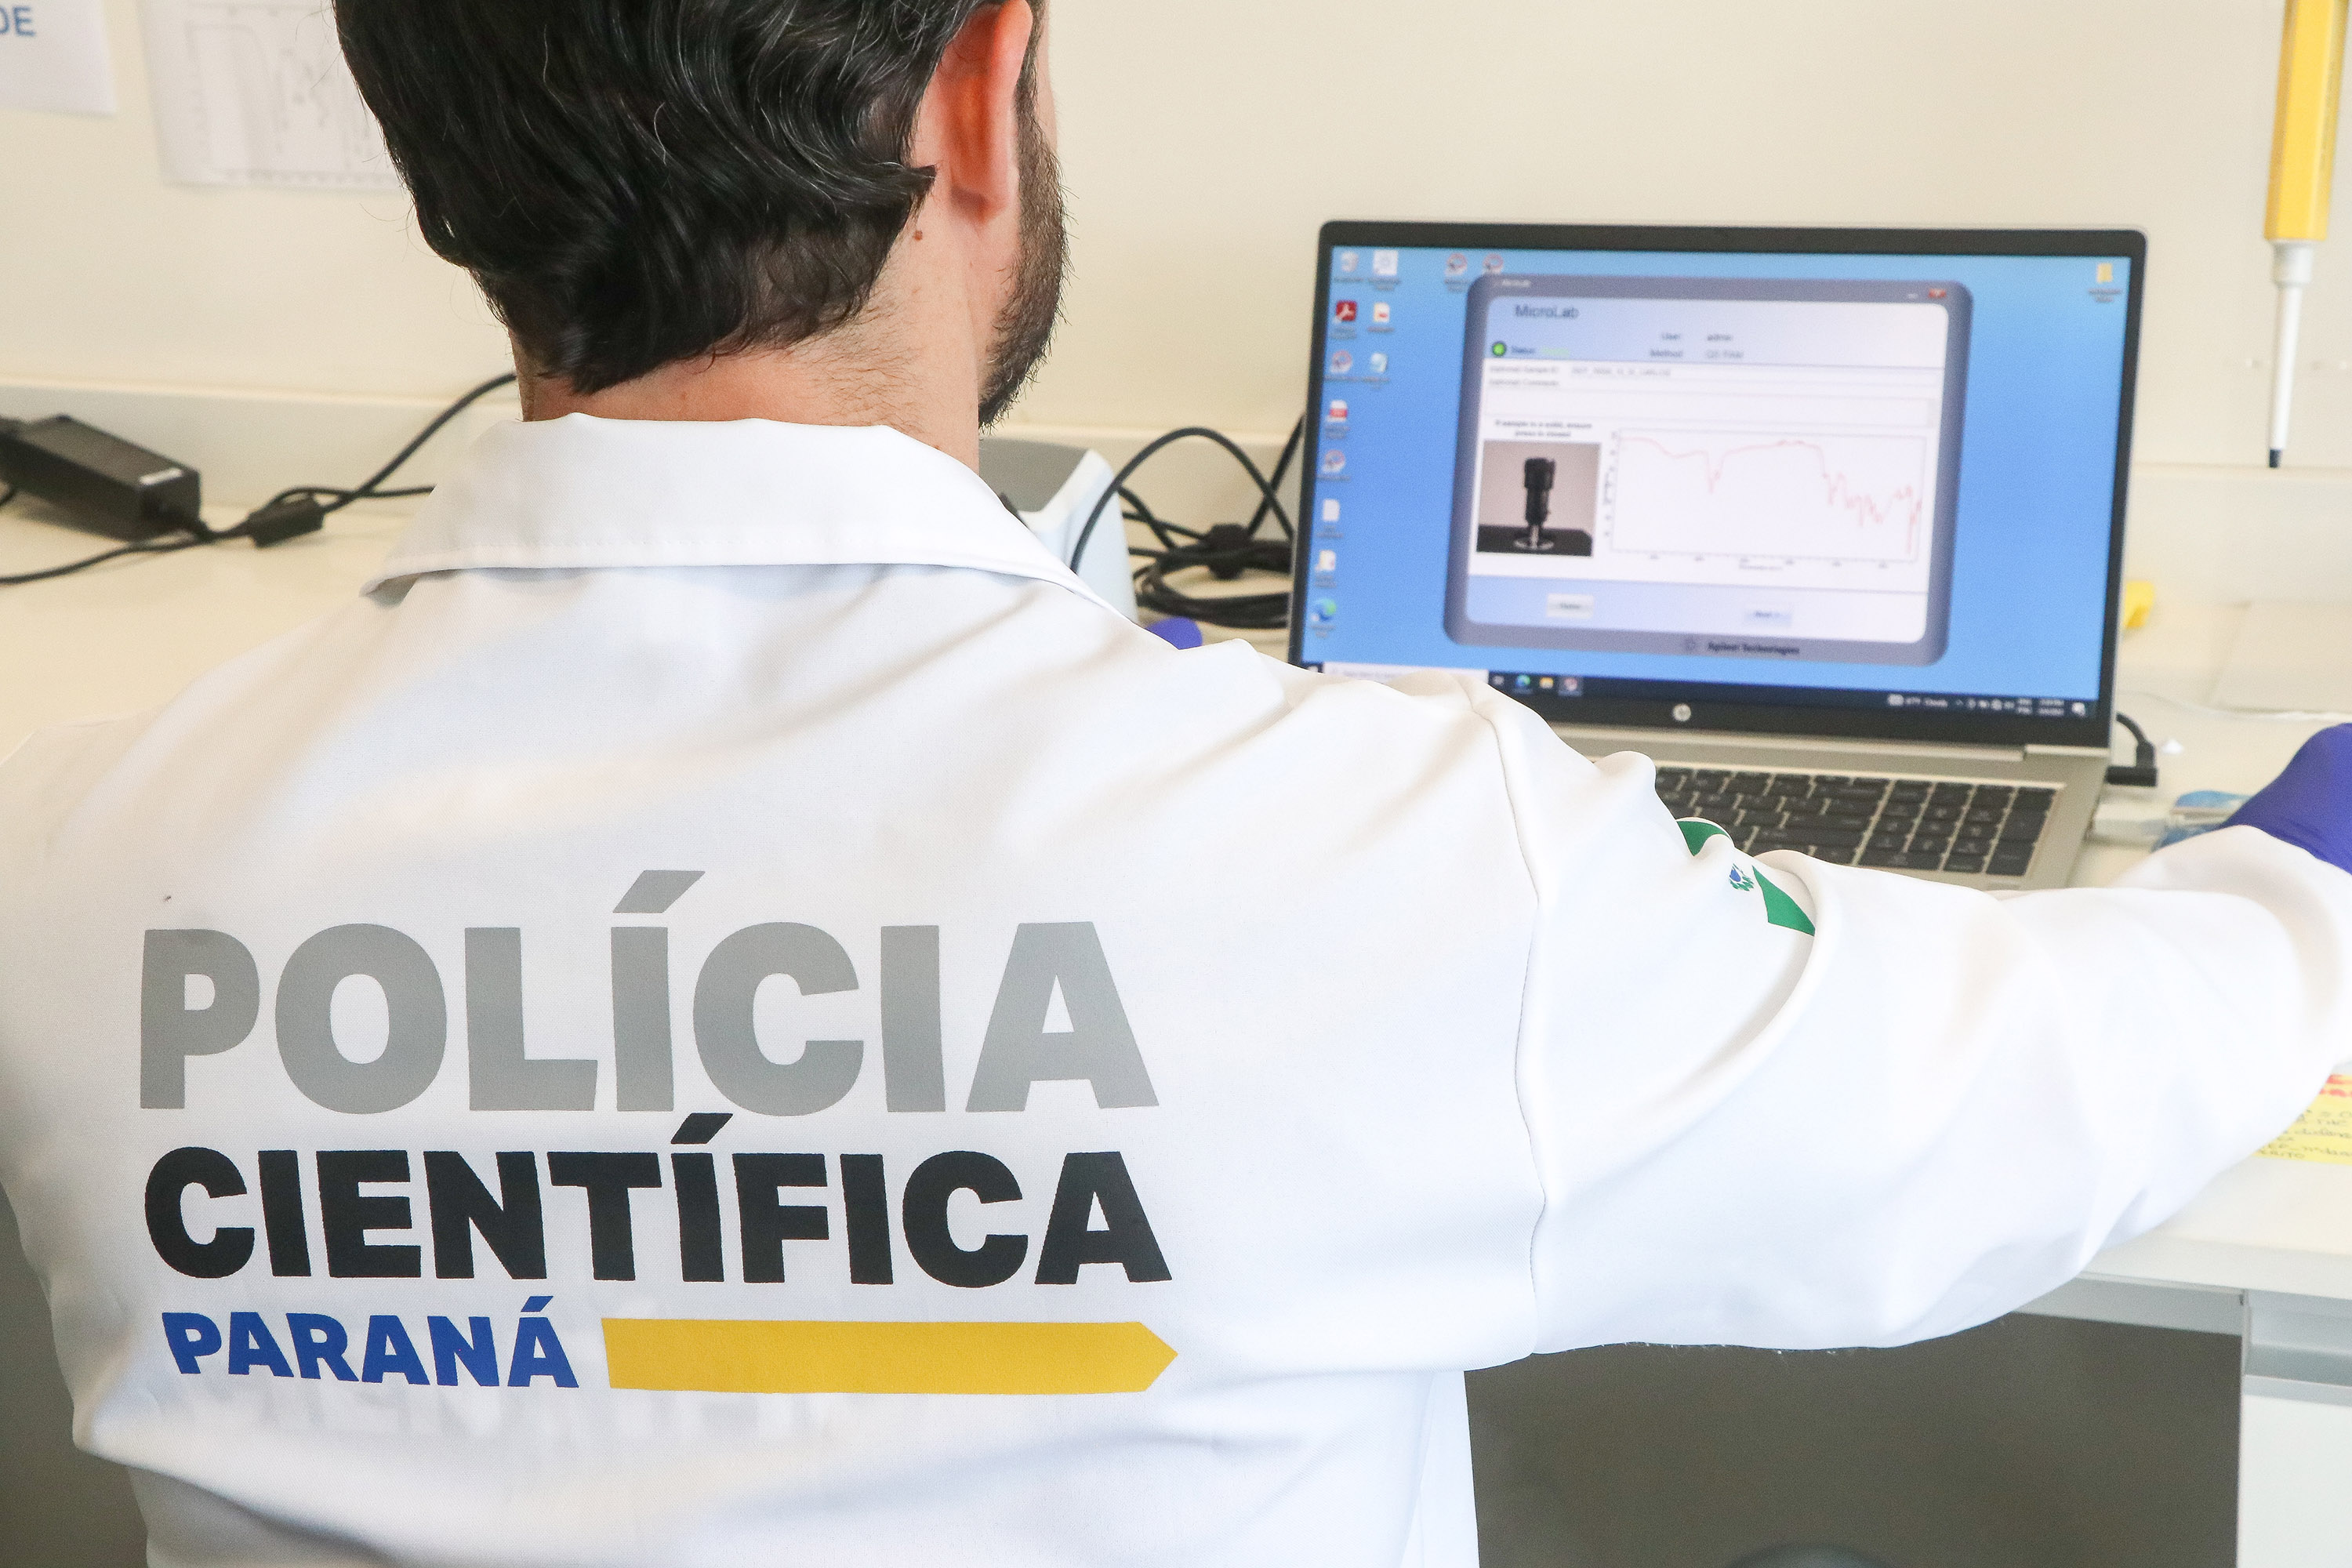 Últimos dias para se inscrever no concurso da Polícia Científica do Paraná